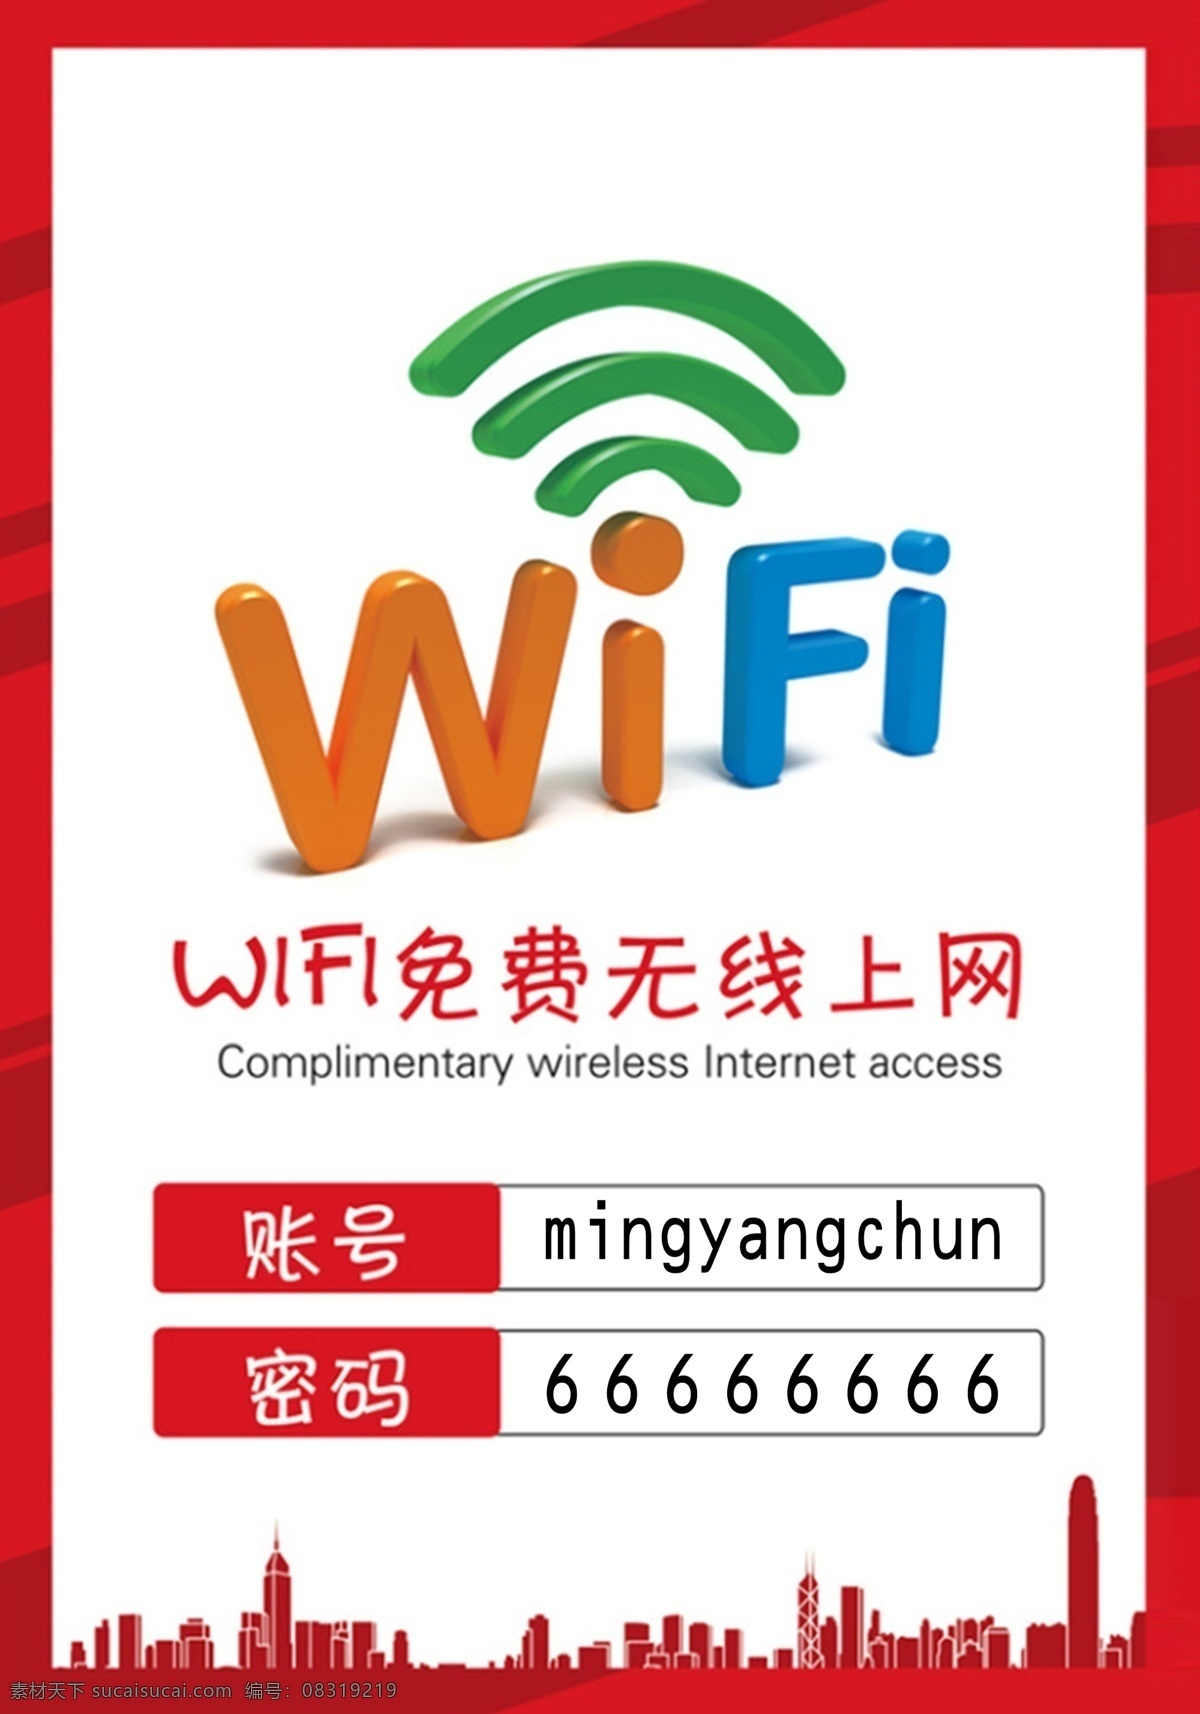 wifi贴 wifi 无线 免费wifi 免费无线 无线网络 免费网络 免费上网